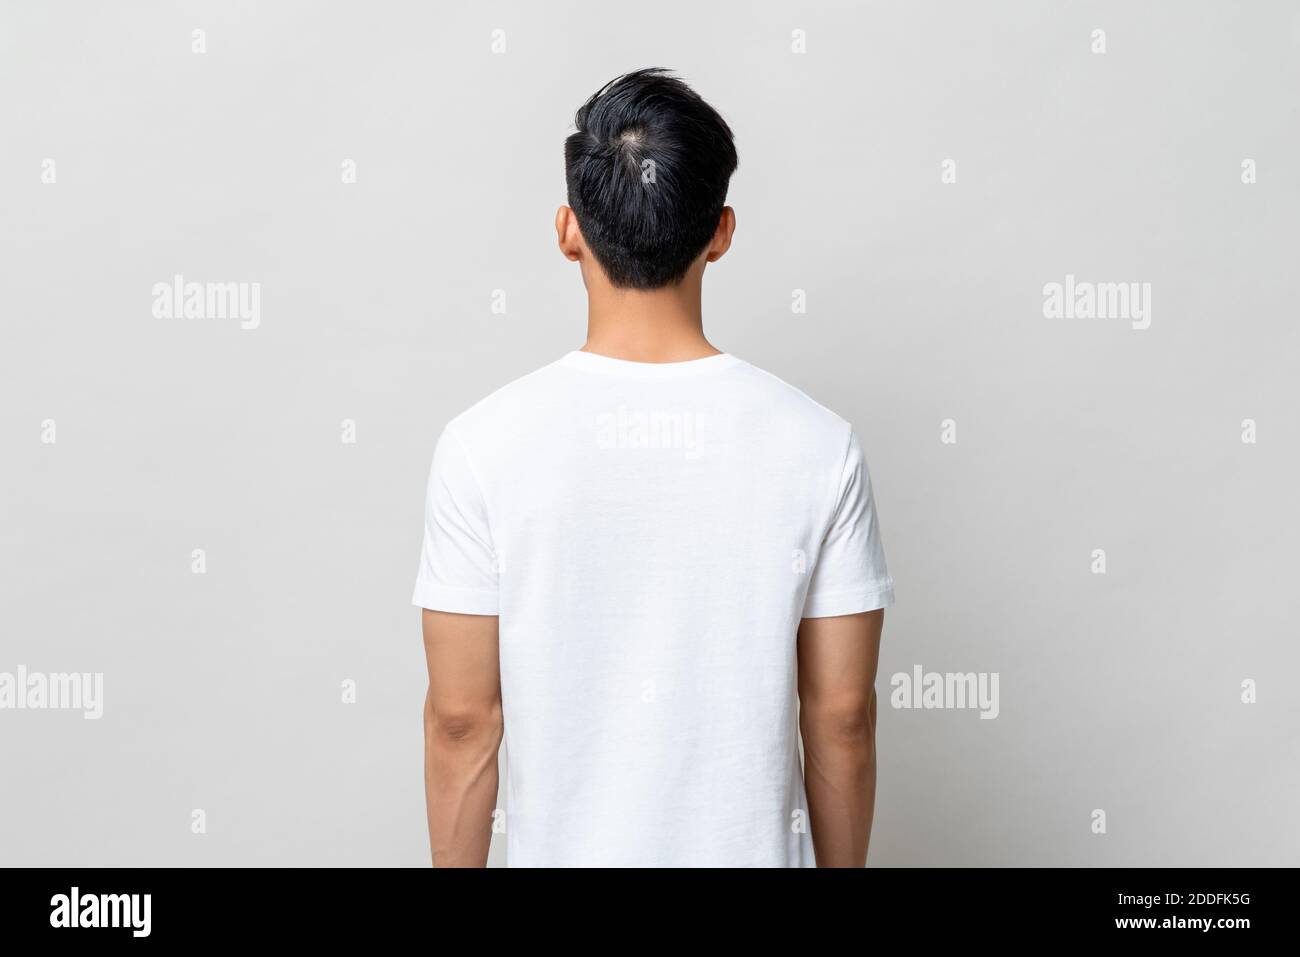 Rückansicht eines jungen Mannes mit einfarbigem weißen T-Shirt Hellgrauer isolierter Hintergrund Stockfoto